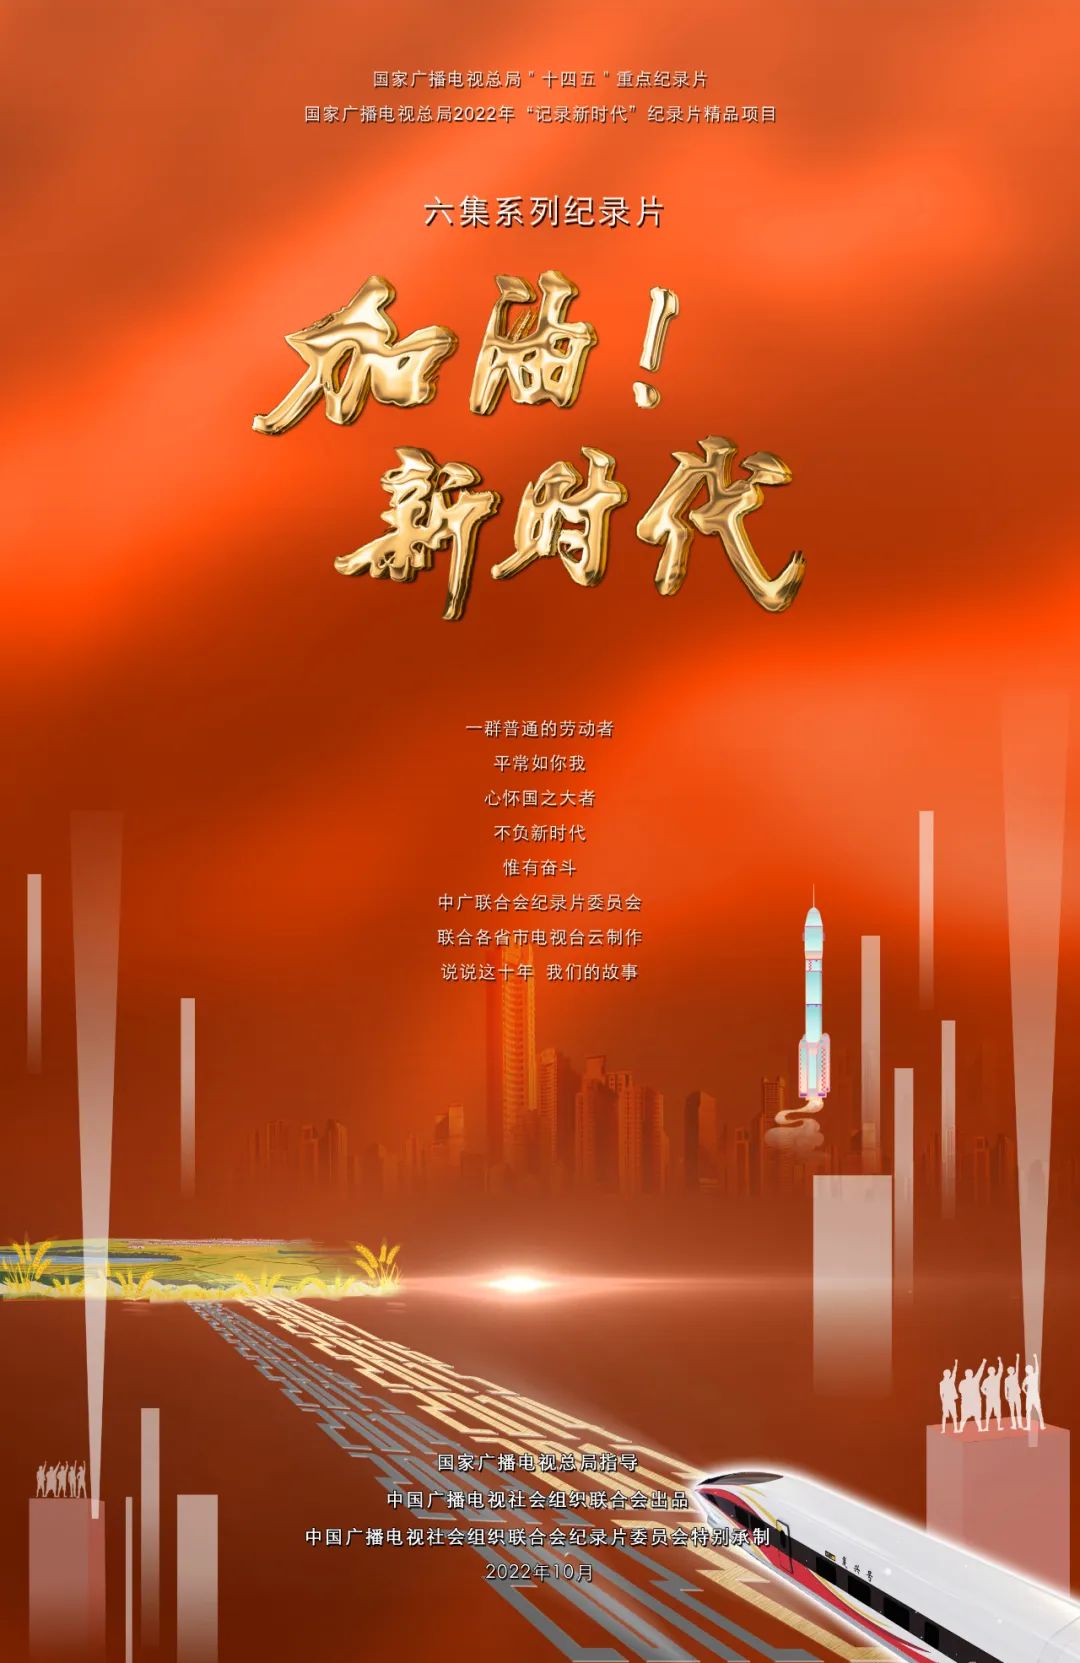 中广联合会六集纪录片《加油！新时代》即将播出